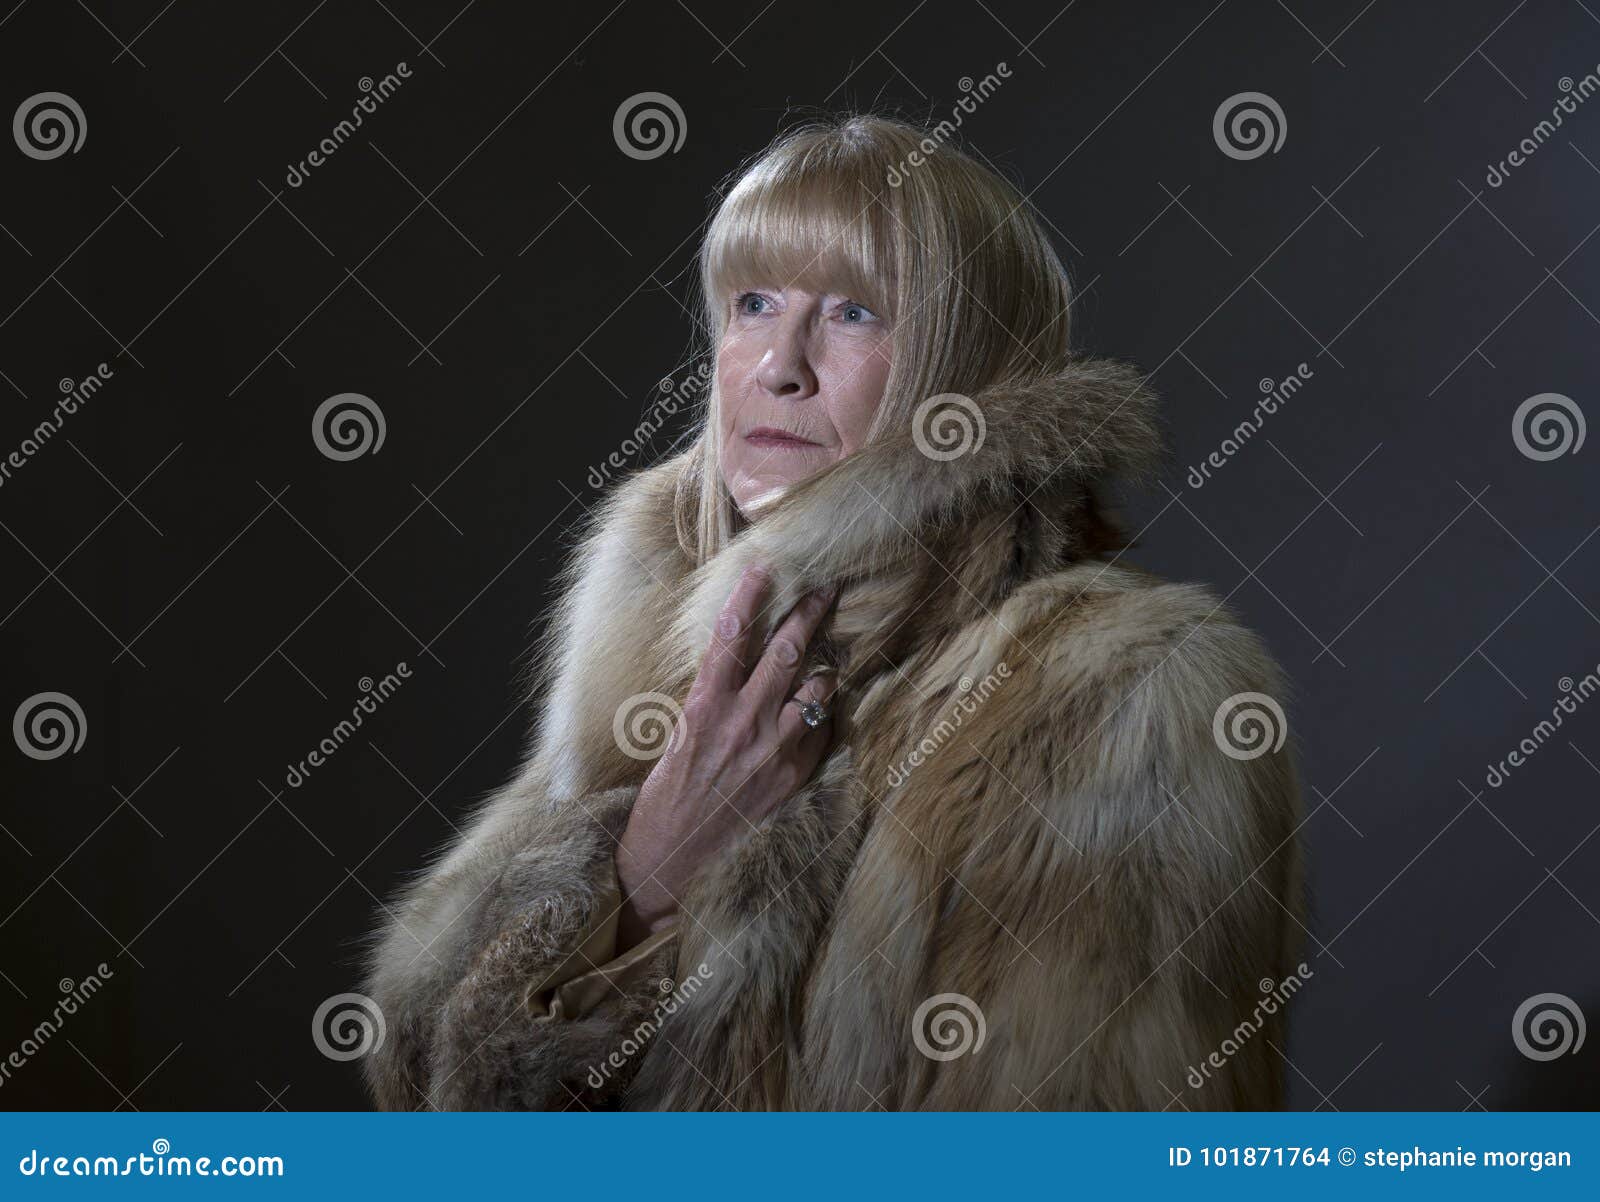 Mature woman in fur